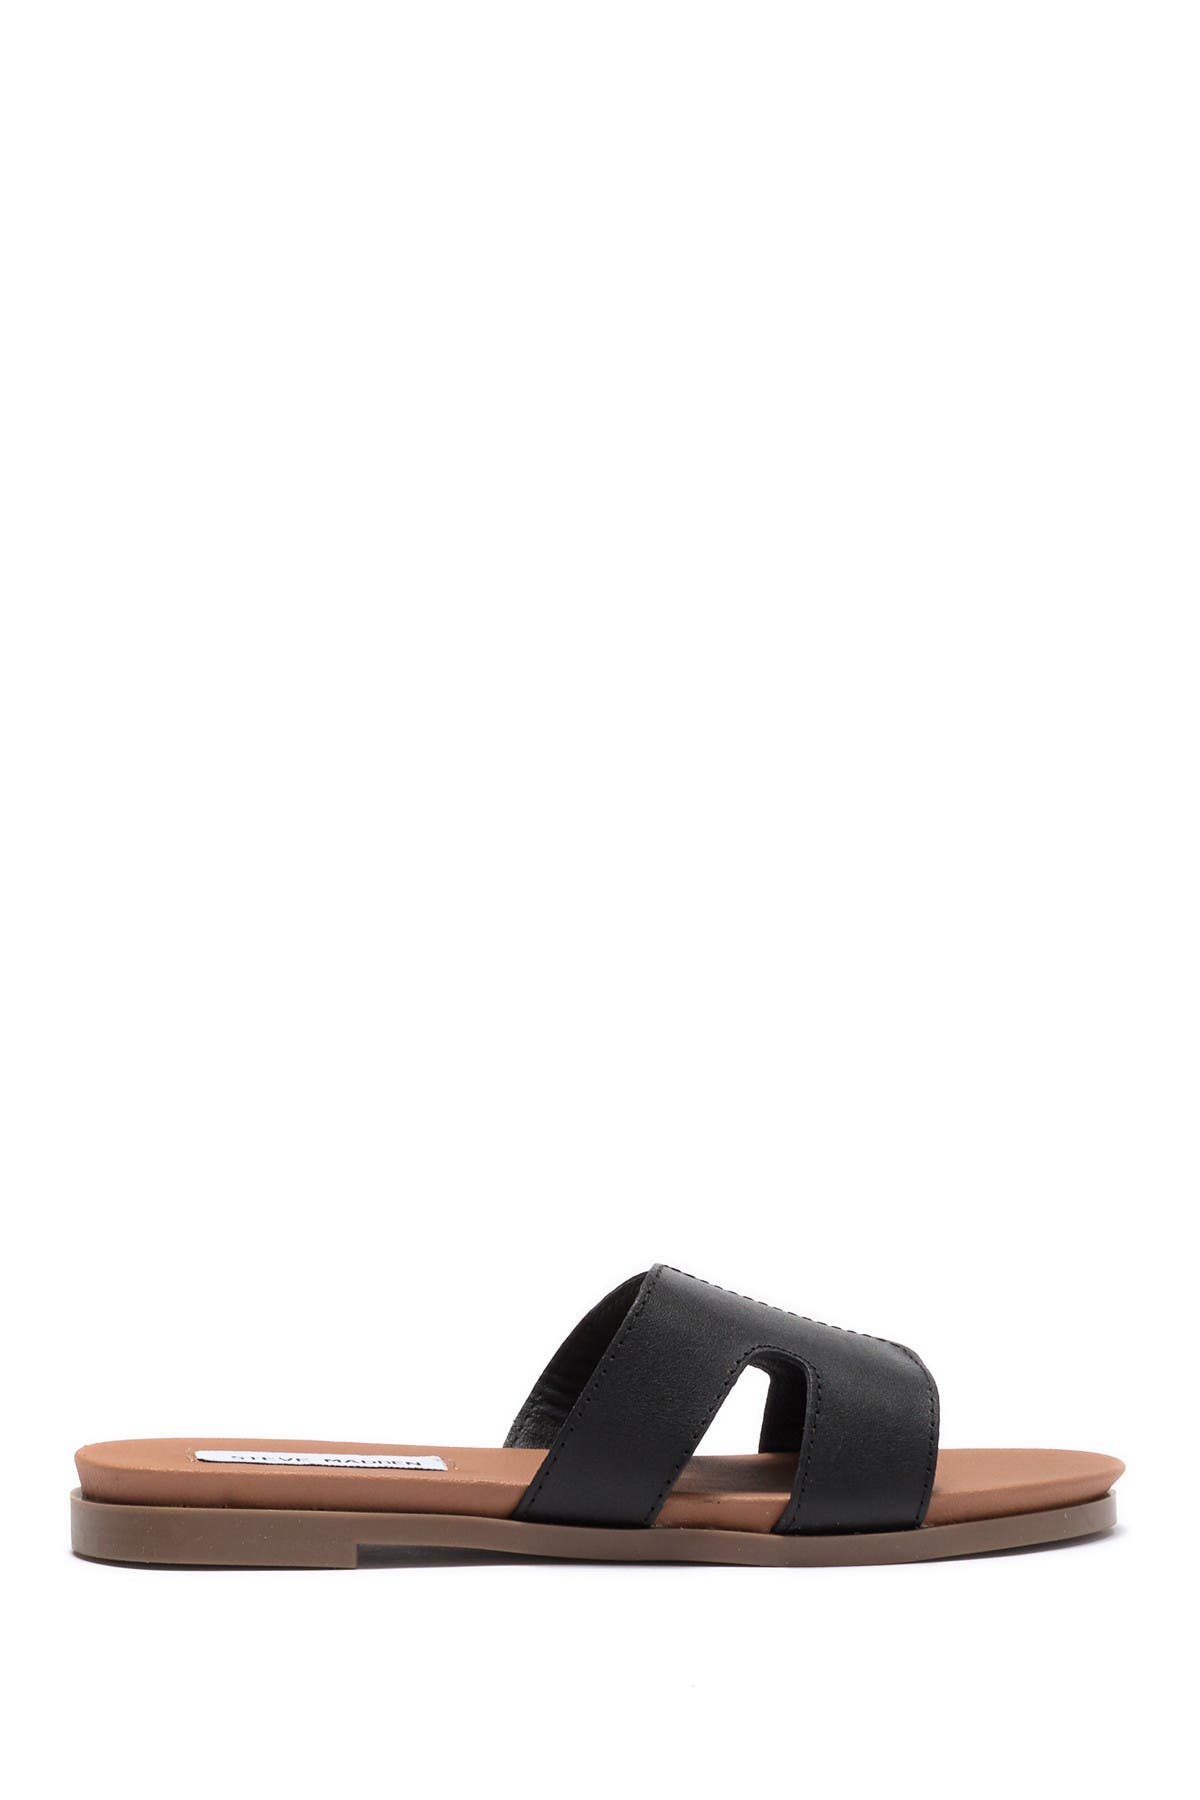 Steve Madden Hoku Slide Sandal In Black